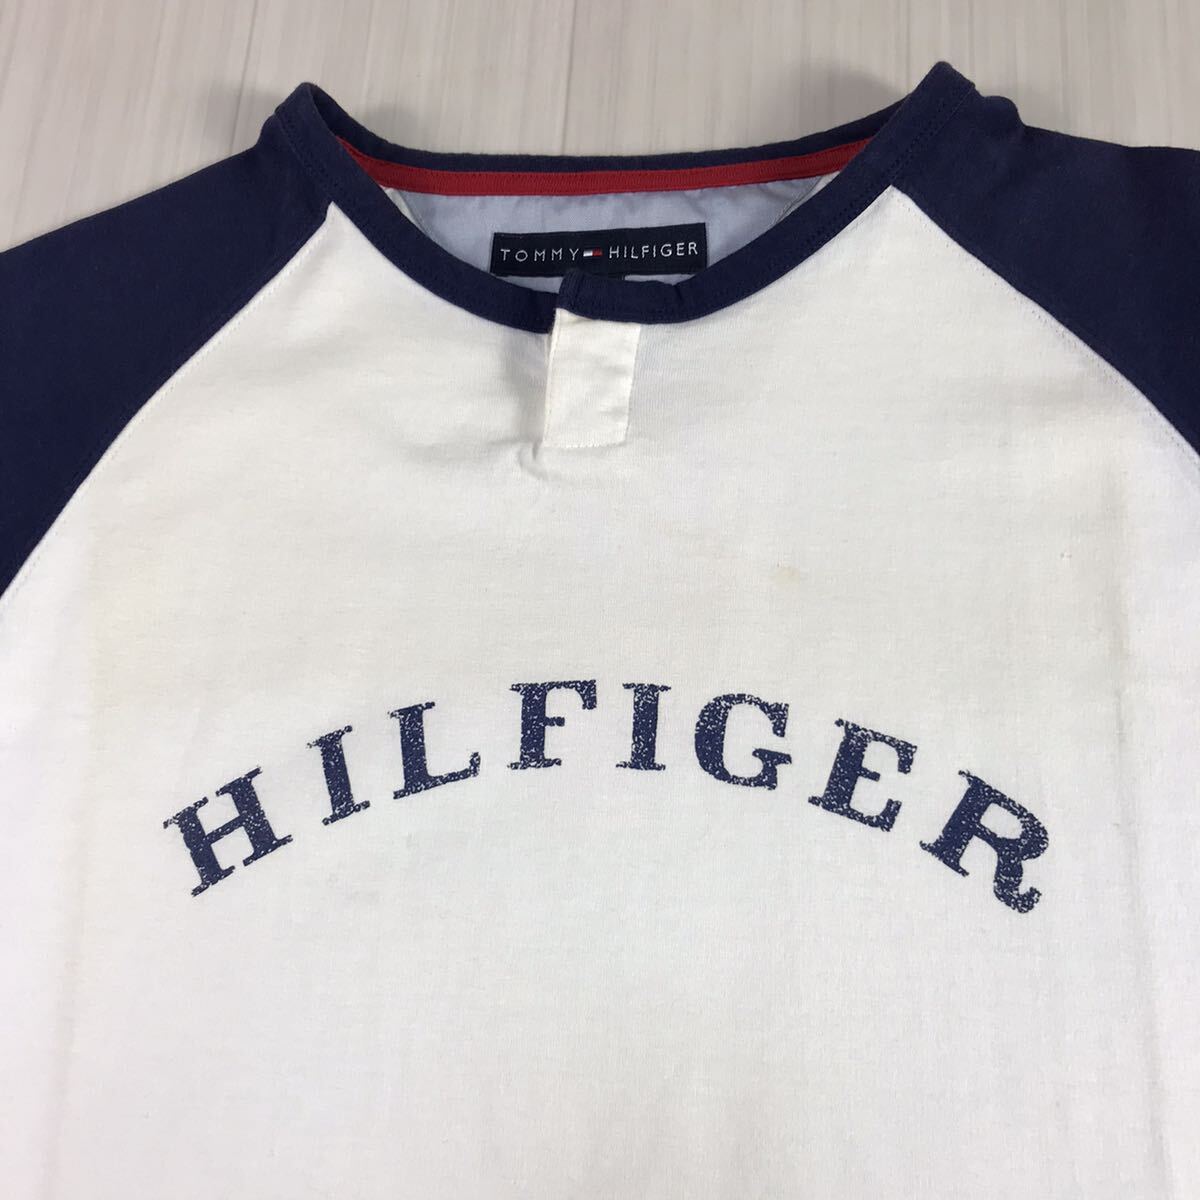 TOMMY HILFIGER トミー ヒルフィガー 半袖Tシャツ S ホワイト×ネイビー プリントTシャツ ビッグロゴ ラグランスリーブの画像4